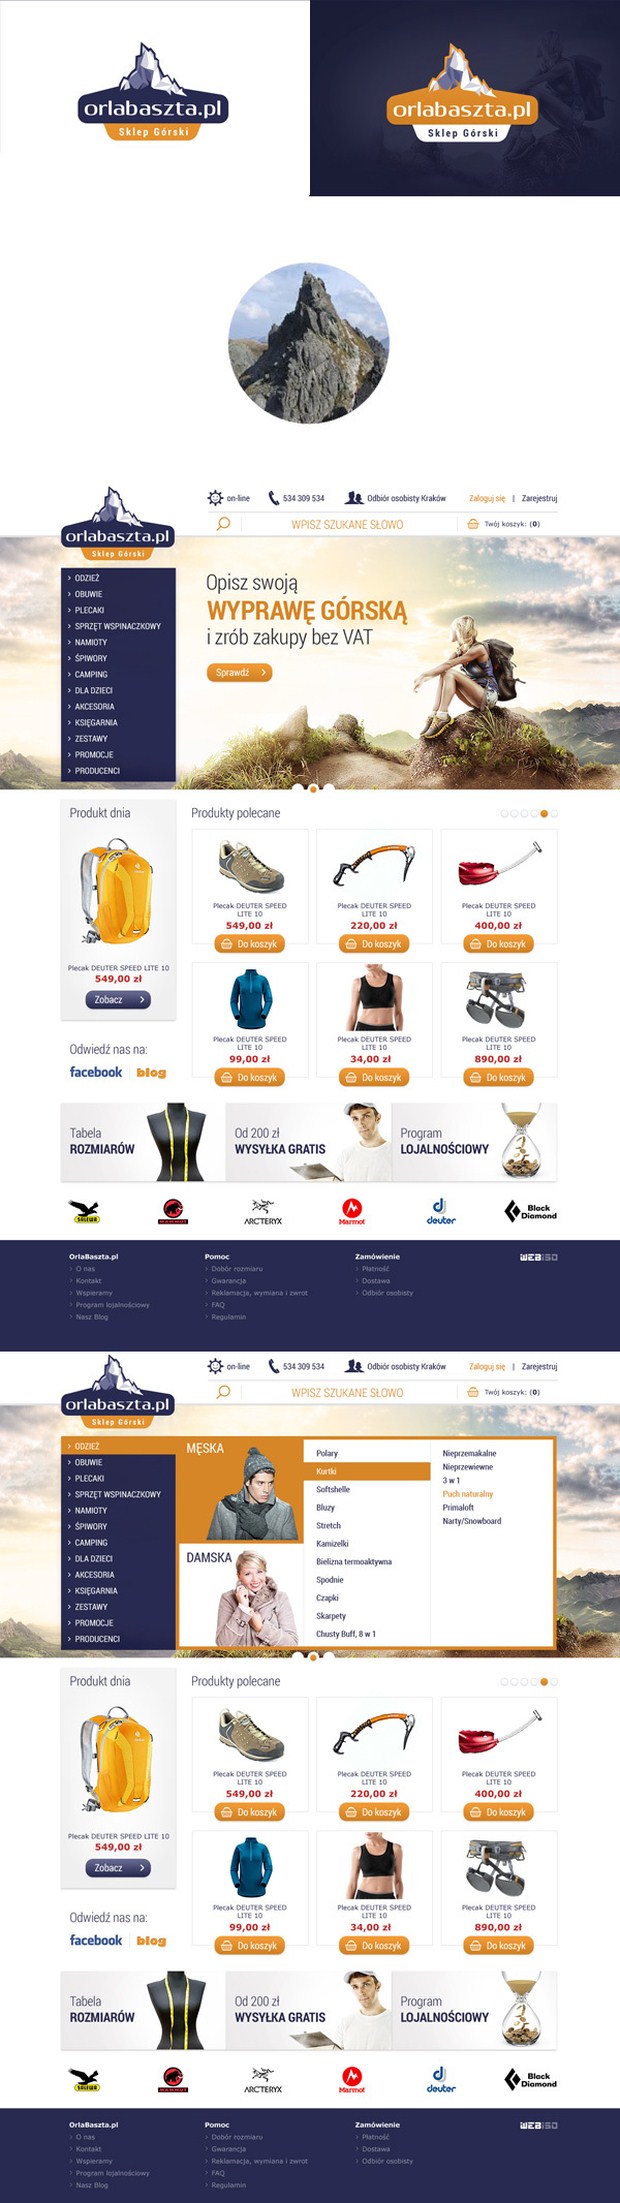 Orlabaszta online shop Web Design